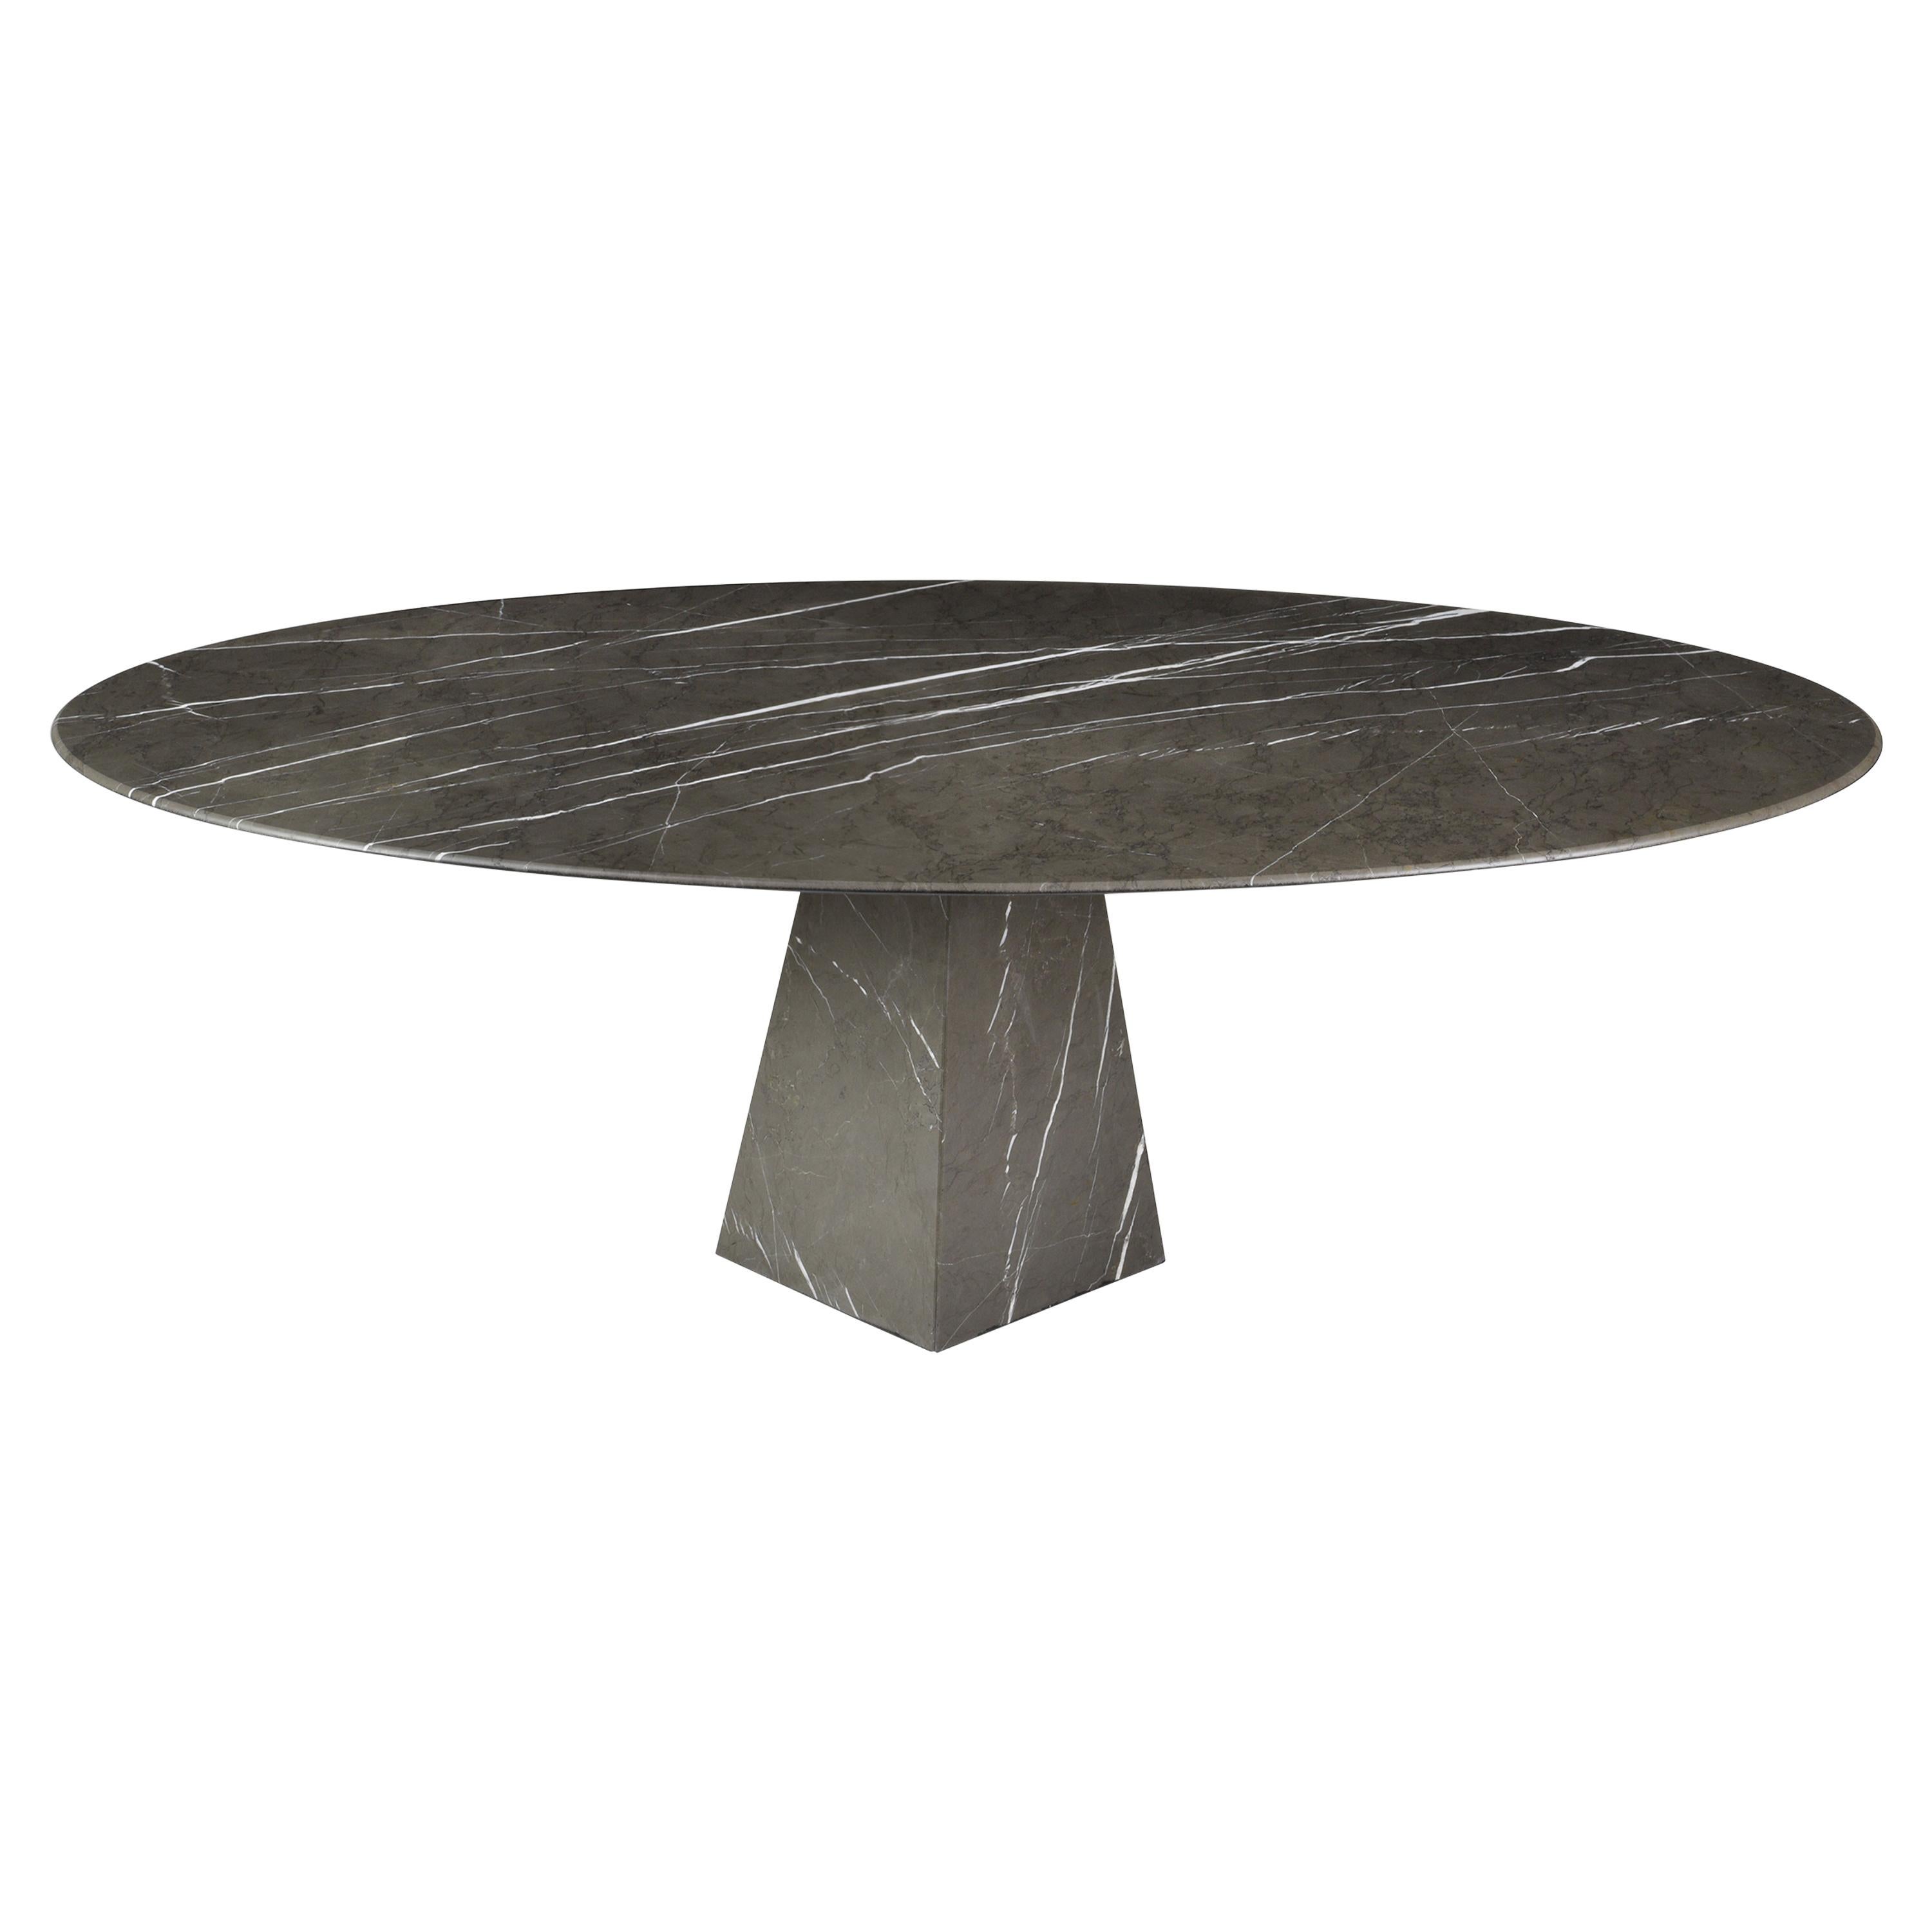 Table basse elliptique en marbre gris graphite mat ultra mince